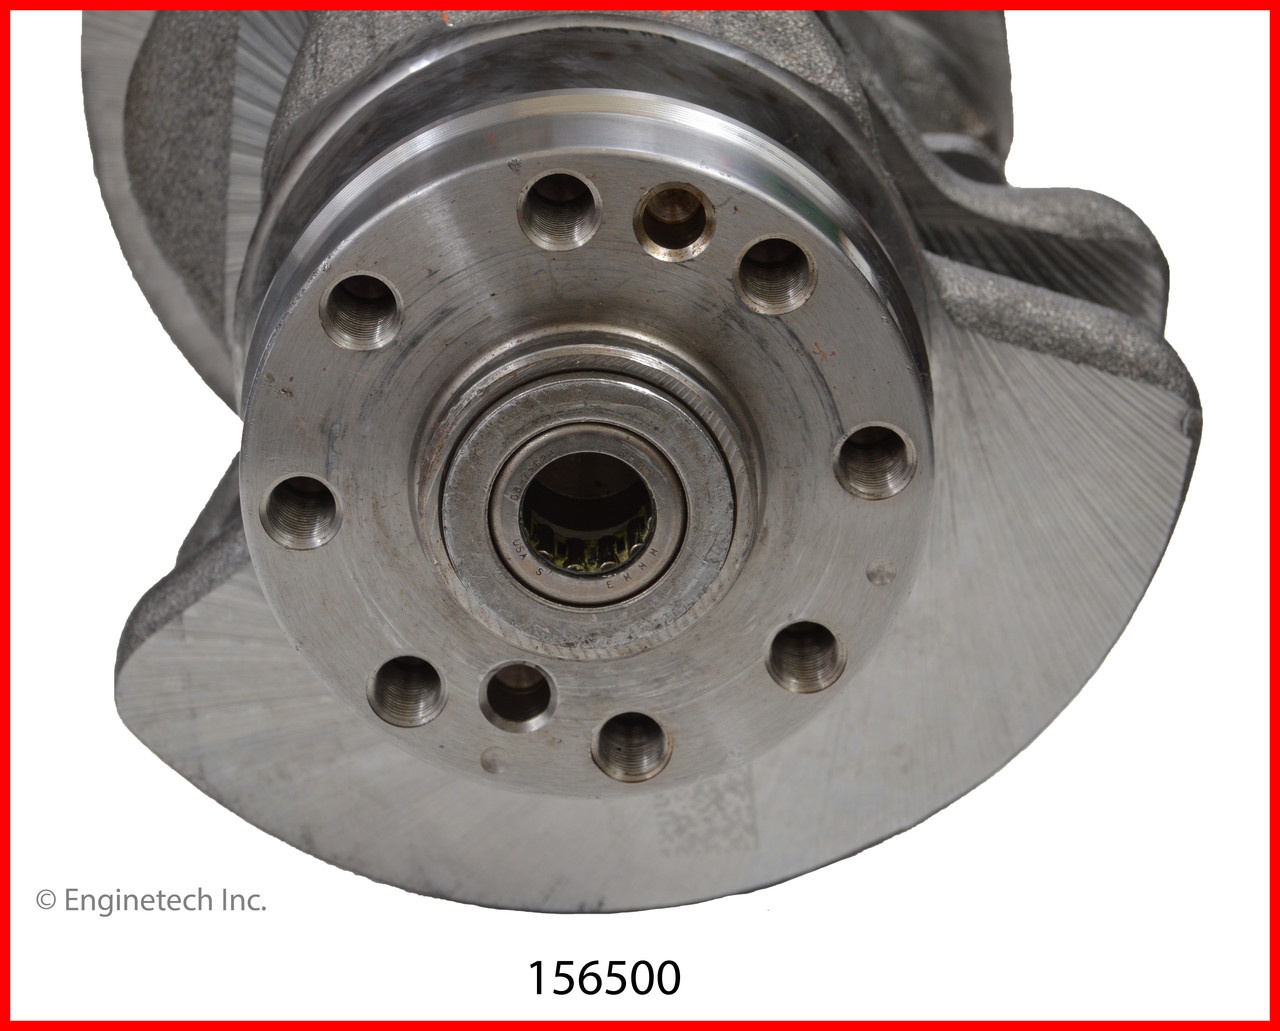 Crankshaft Kit - 2013 Ford Edge 3.7L (156500.D35)